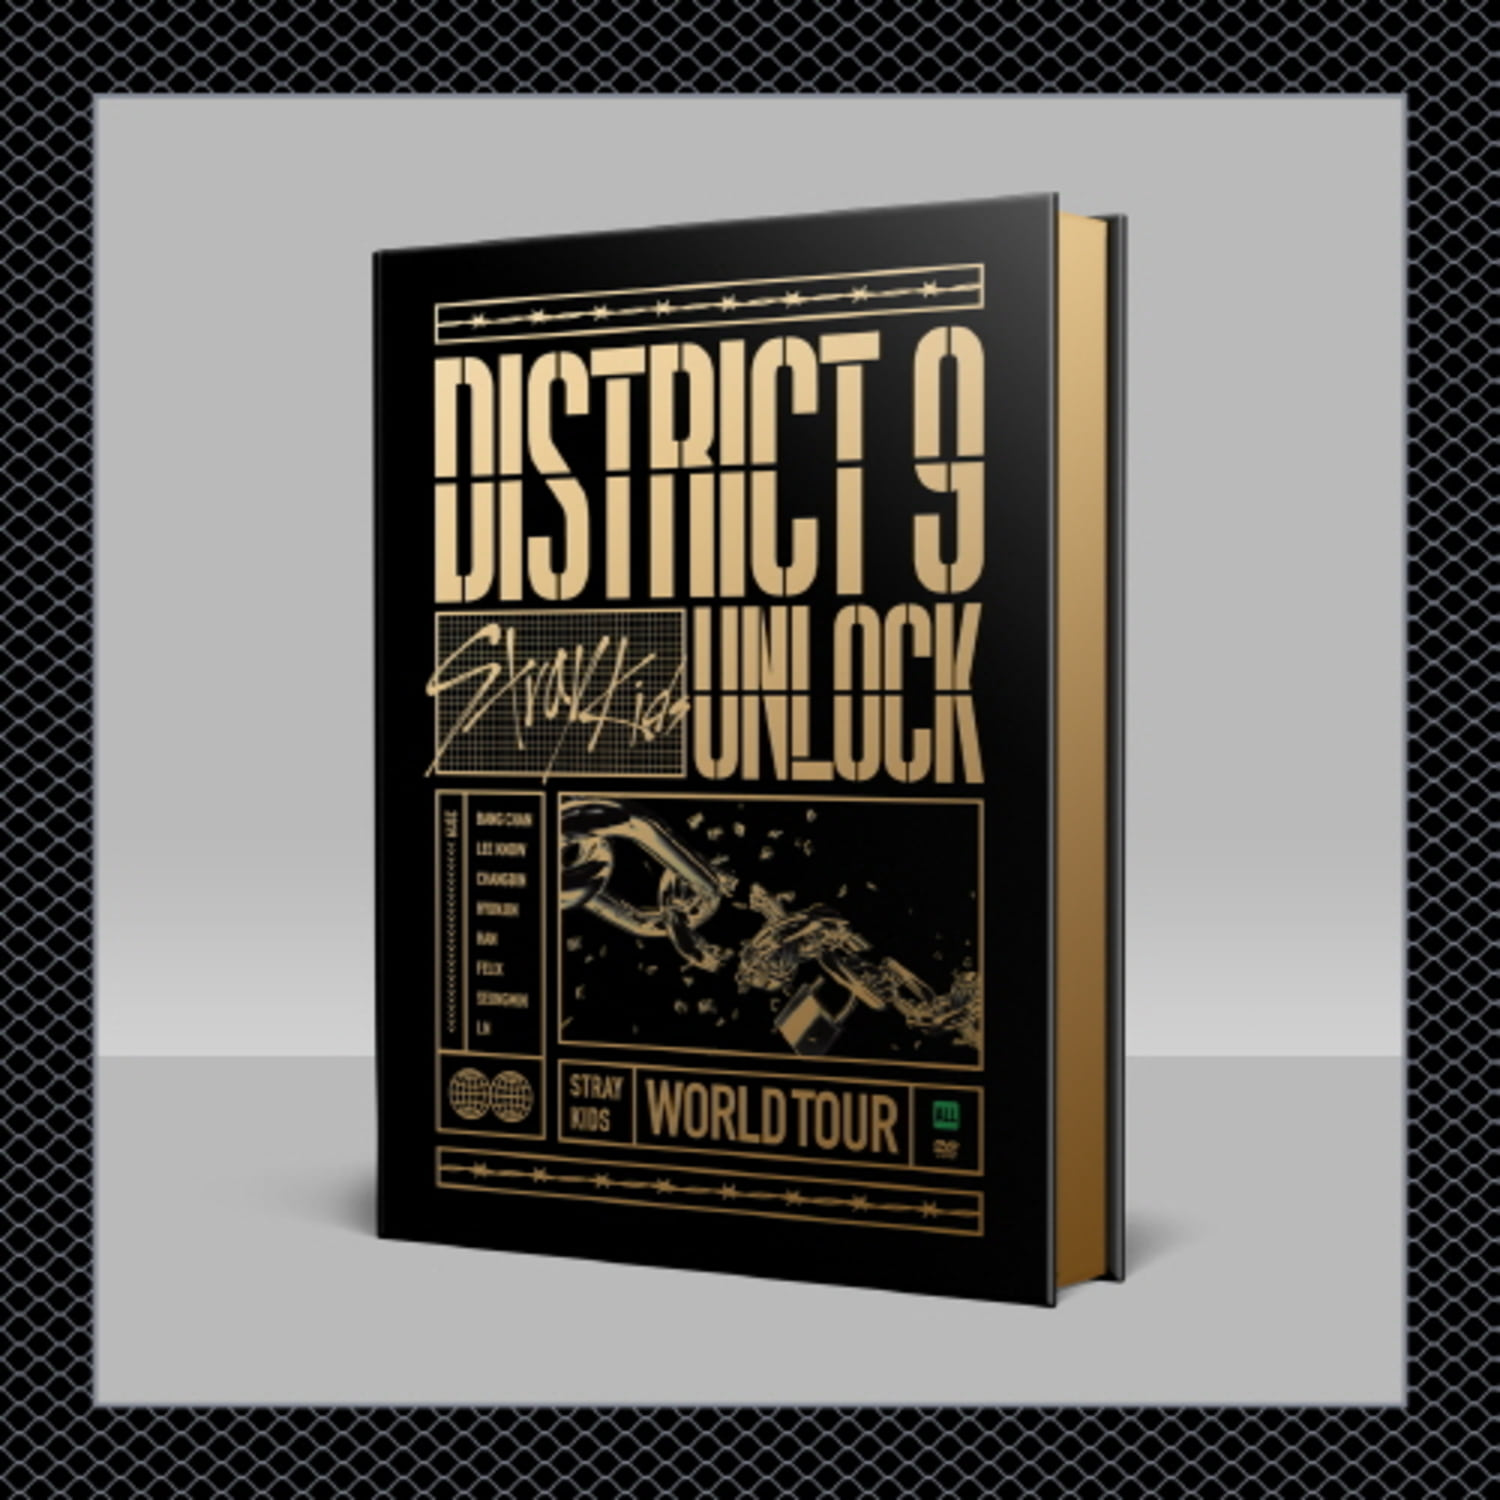 스트레이 키즈(STRAY KIDS) - [District 9 : Unlock&#039; in SEOUL] DVD